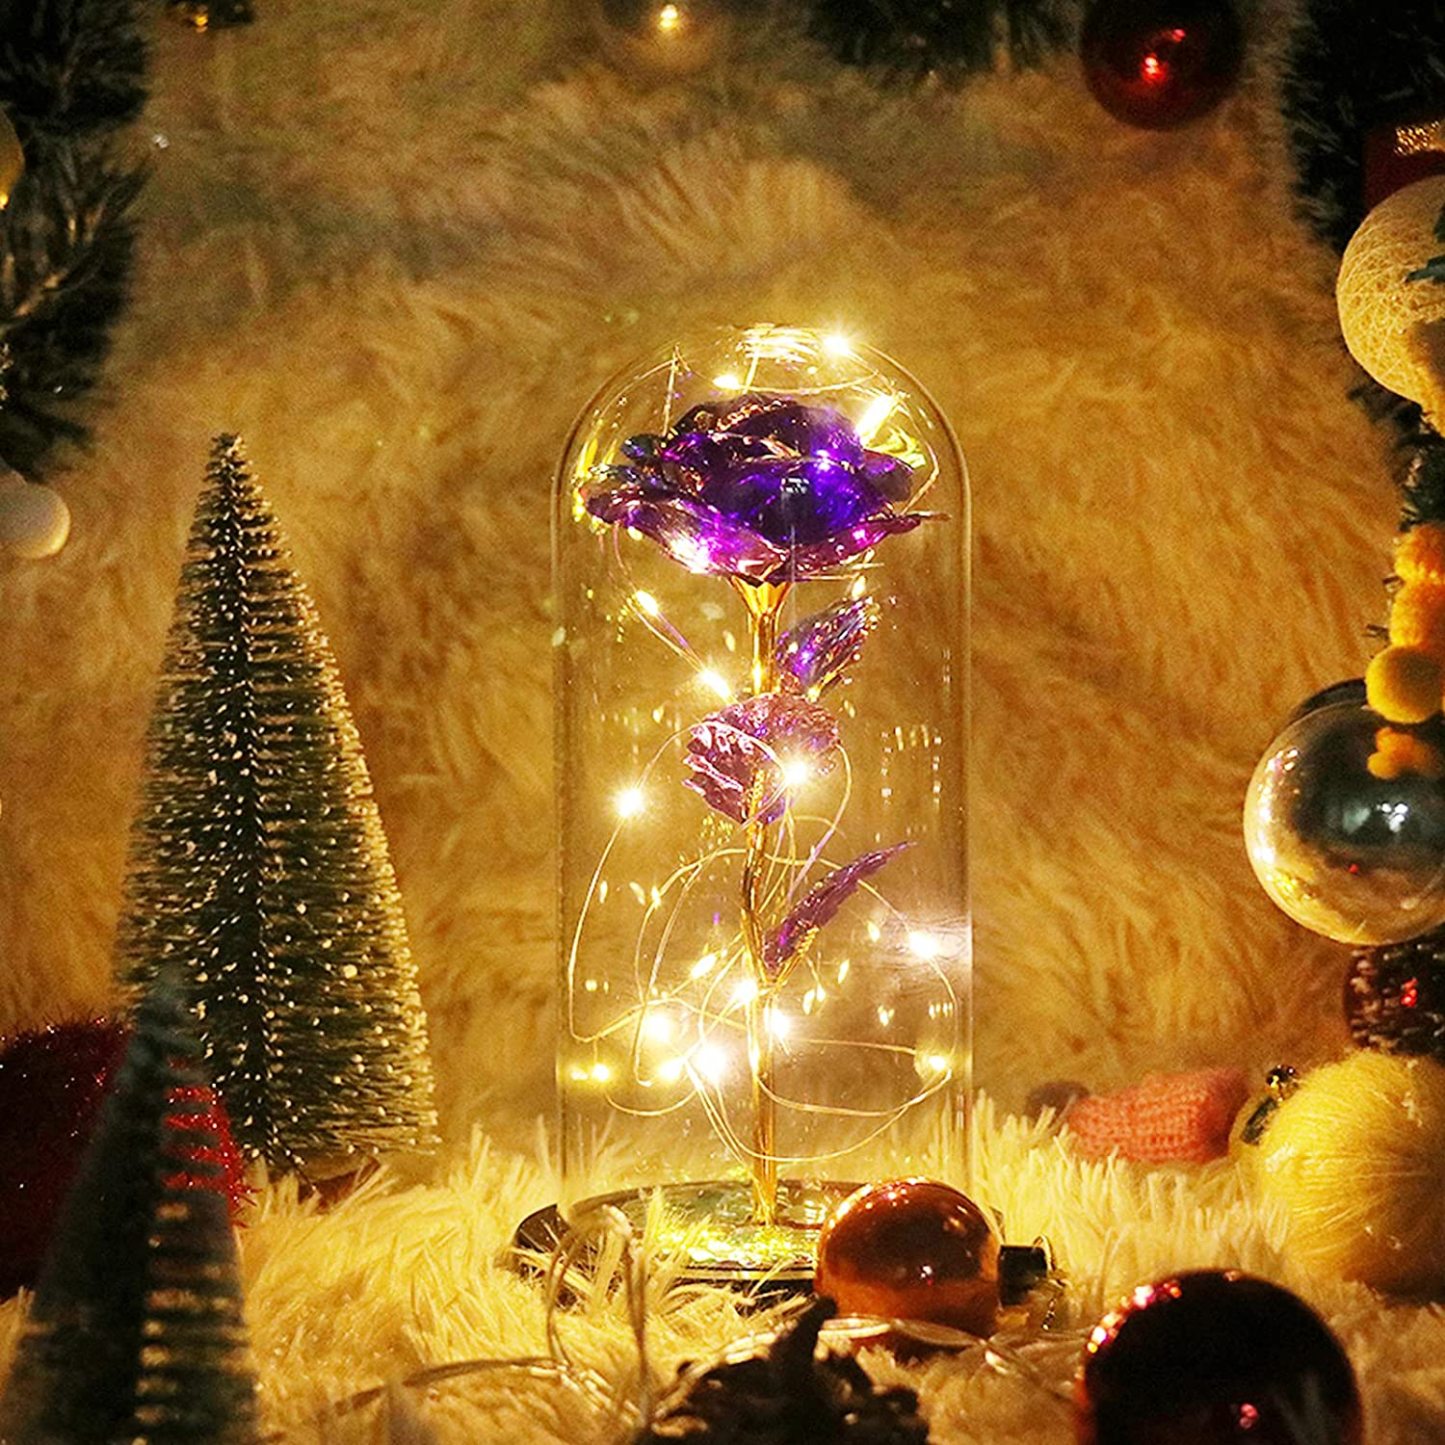 Simulación Romántica Flor Púrpura Eterna Cubierta De Vidrio Led Micro Paisaje Regalos En Navidad, Día De San Valentín Y Aniversario